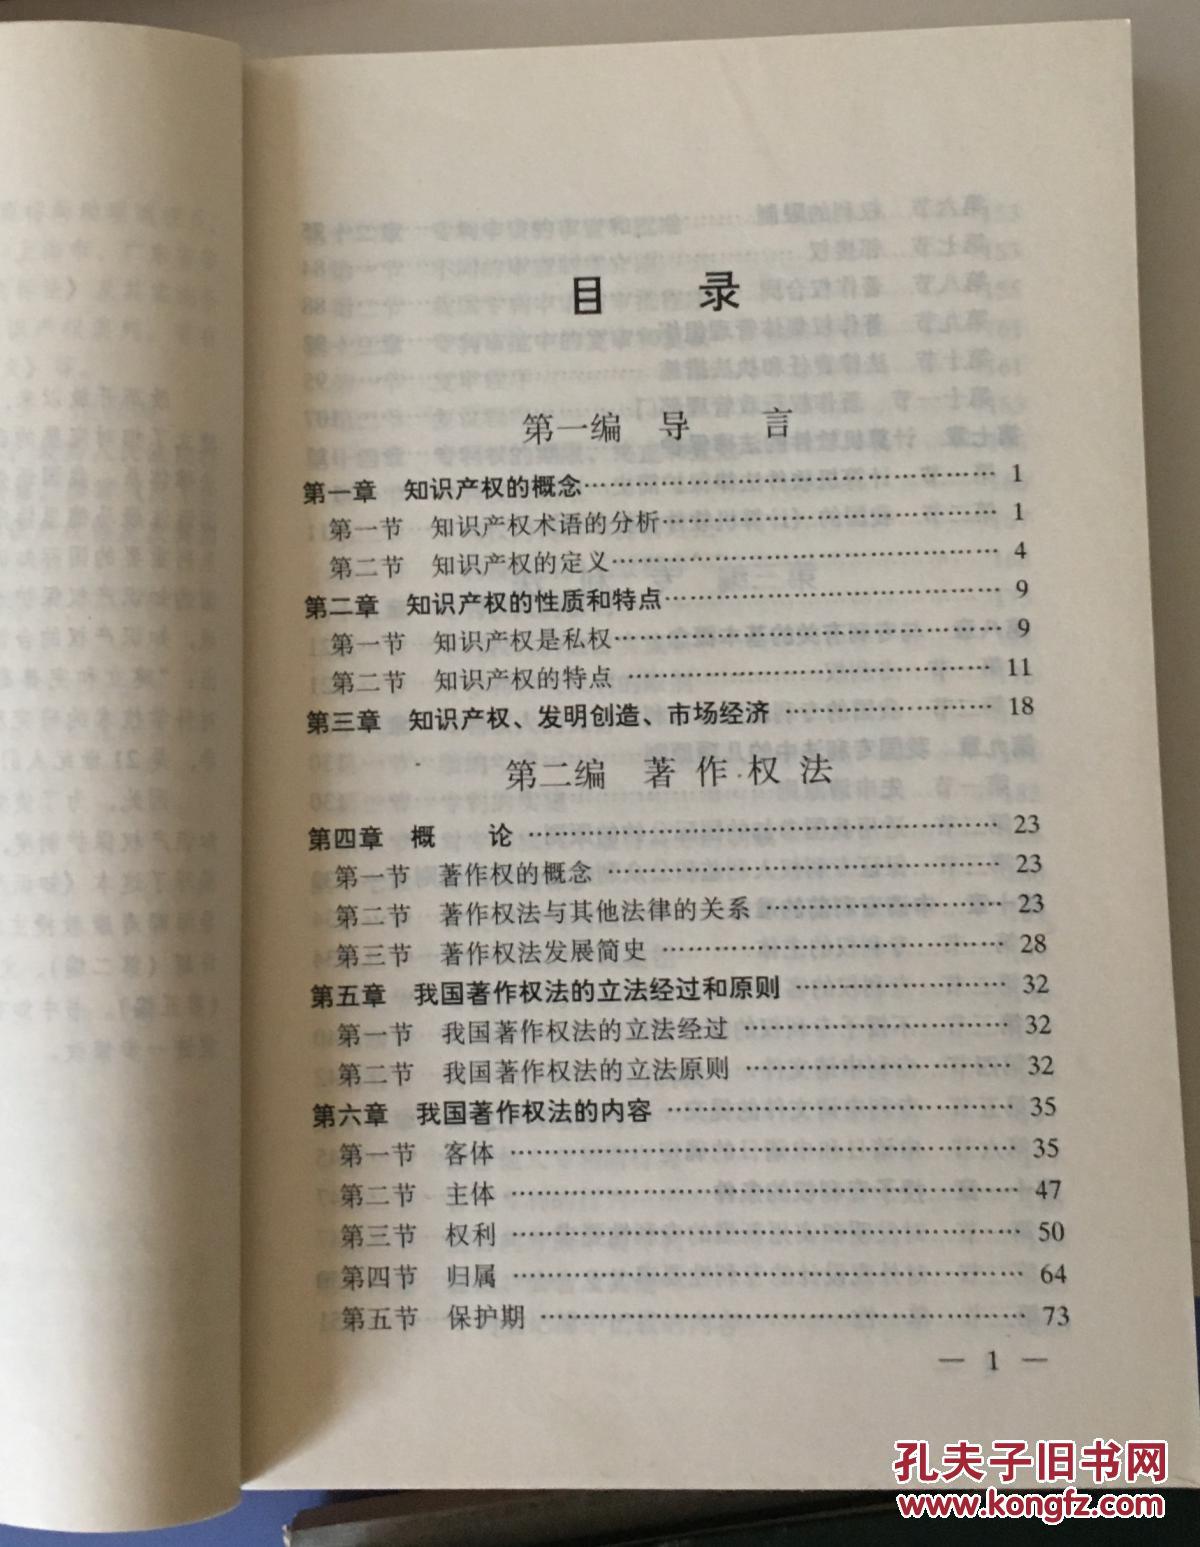 知识产权法，郭寿康主编，2002年正式出版。32开本，442页，定价18.30元，品相为九，图片有目录。